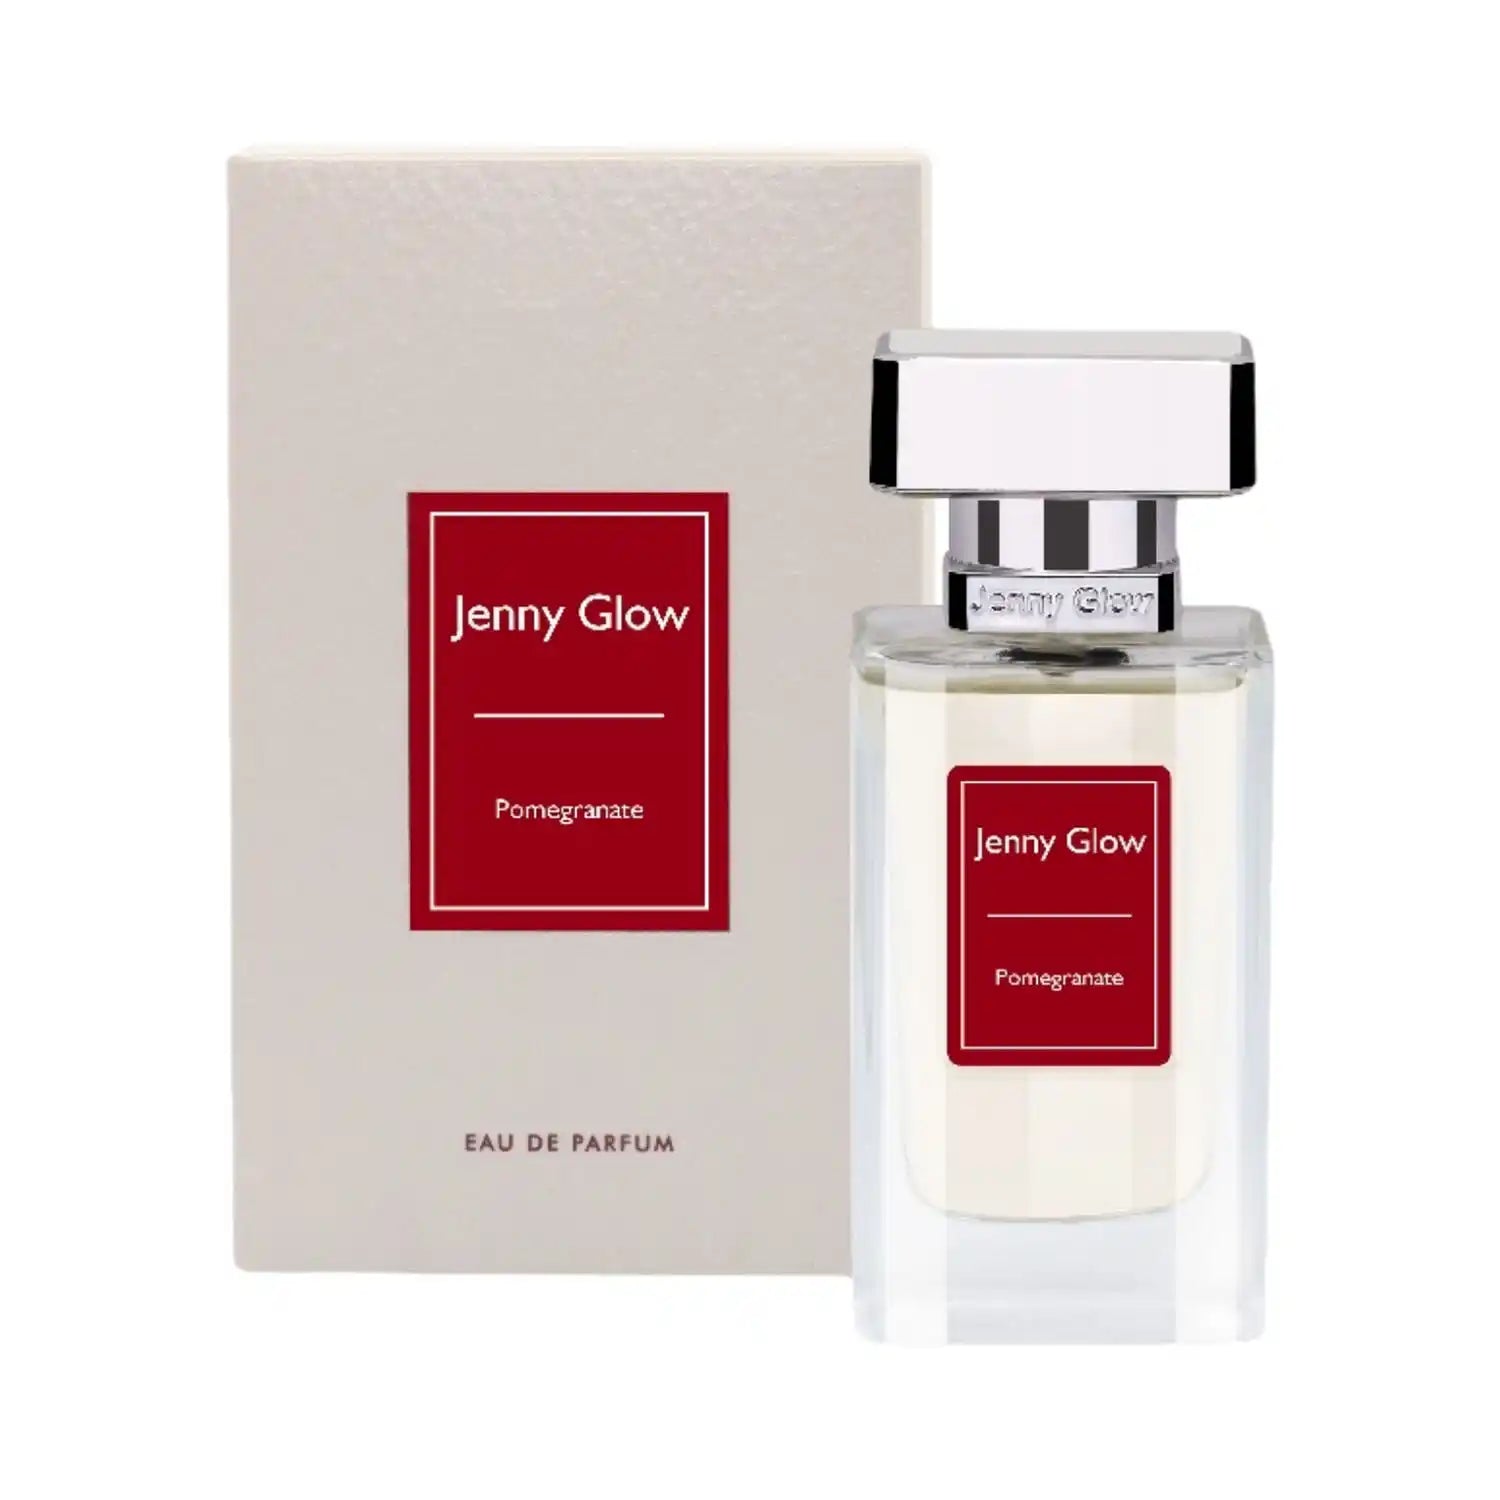 Jenny Glow Pomegranate Eau de Parfum 30ml 1 Shaws Department Stores